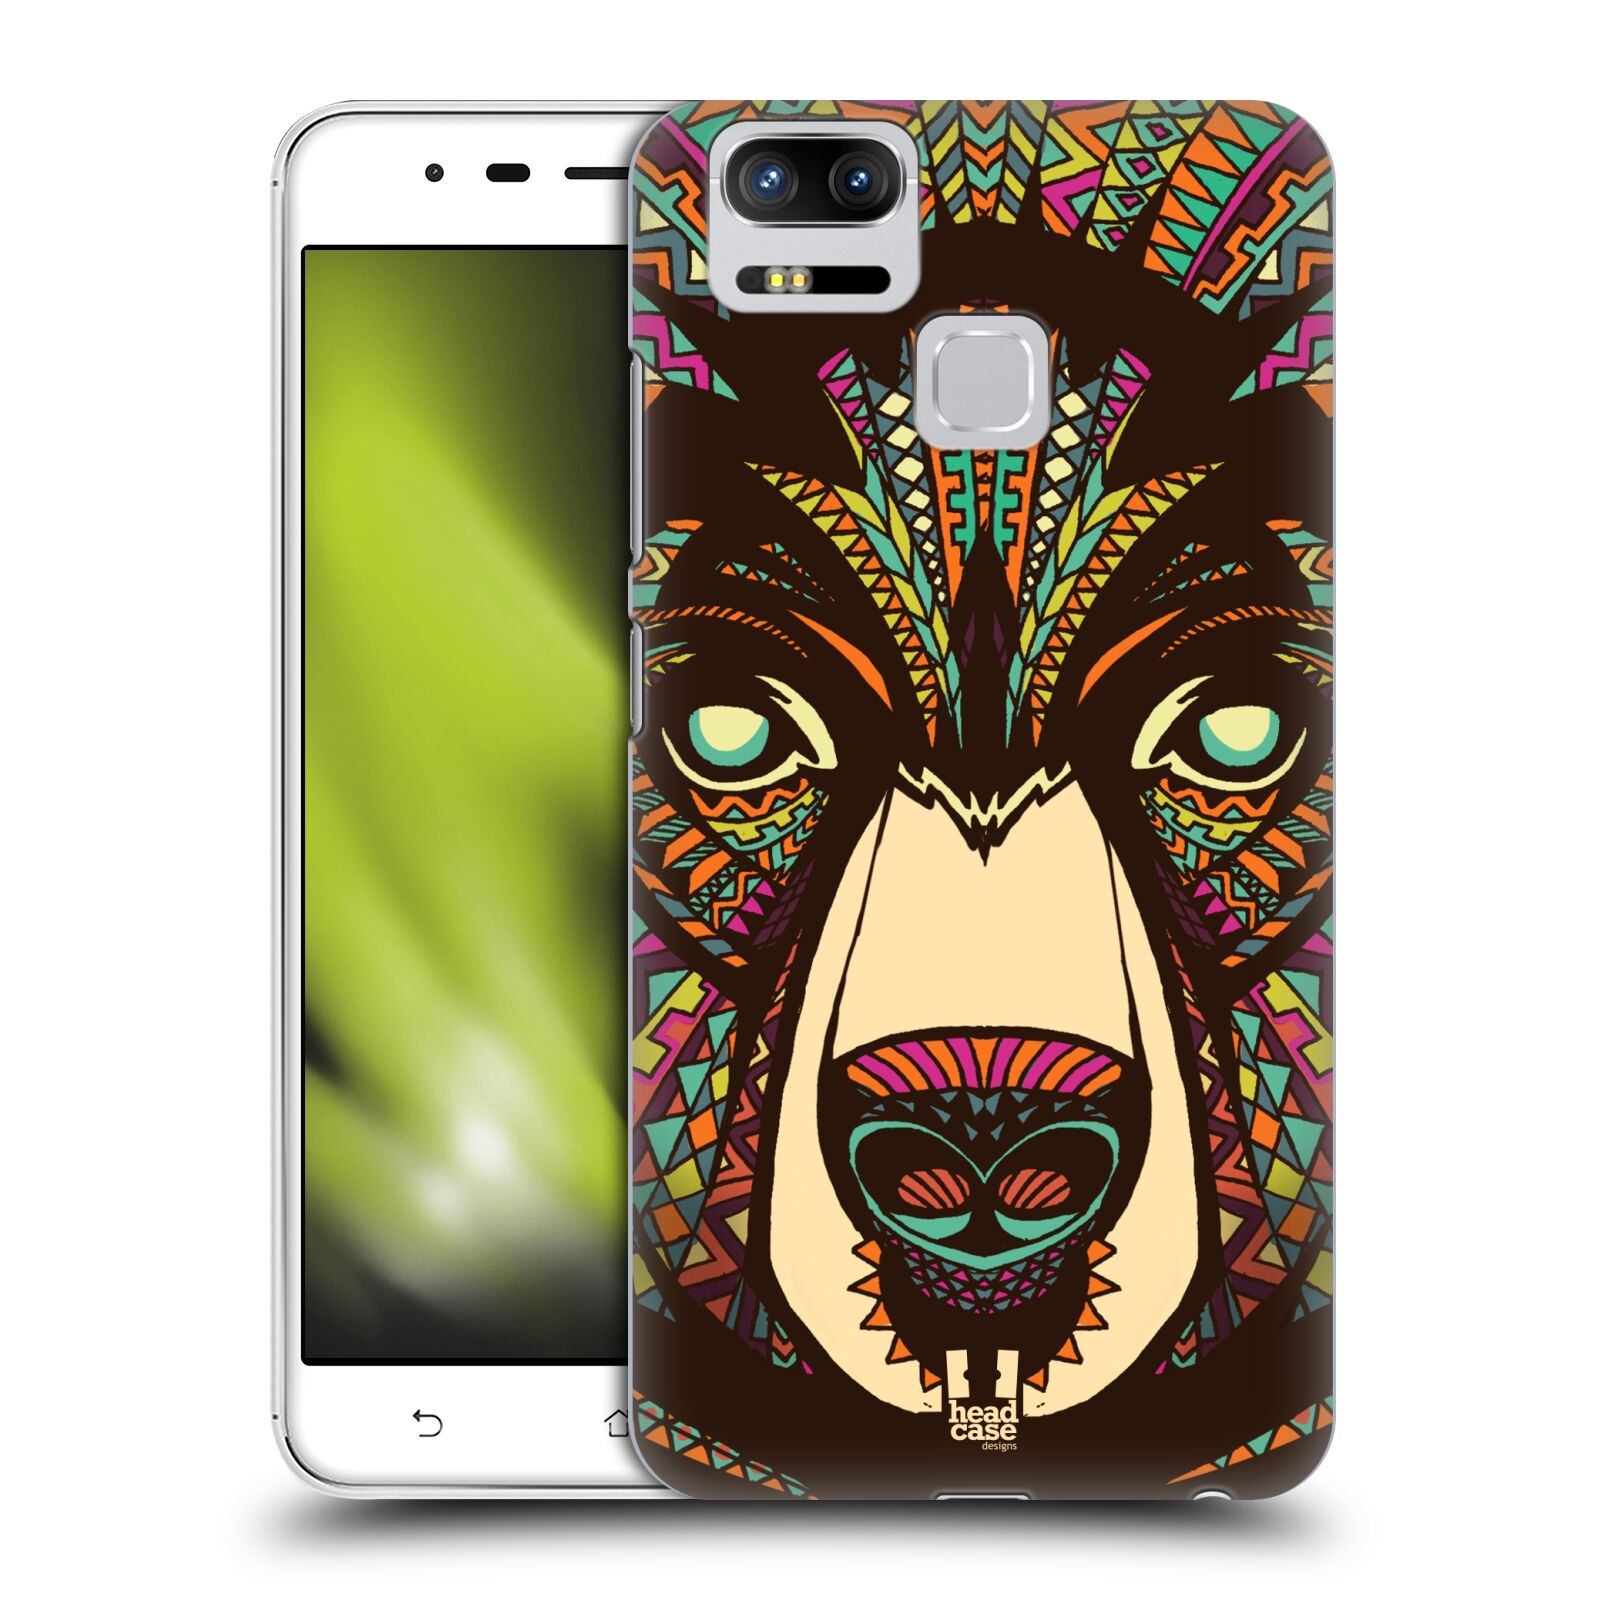 HEAD CASE plastový obal na mobil Asus Zenfone 3 Zoom ZE553KL vzor Aztécký motiv zvíře medvěd